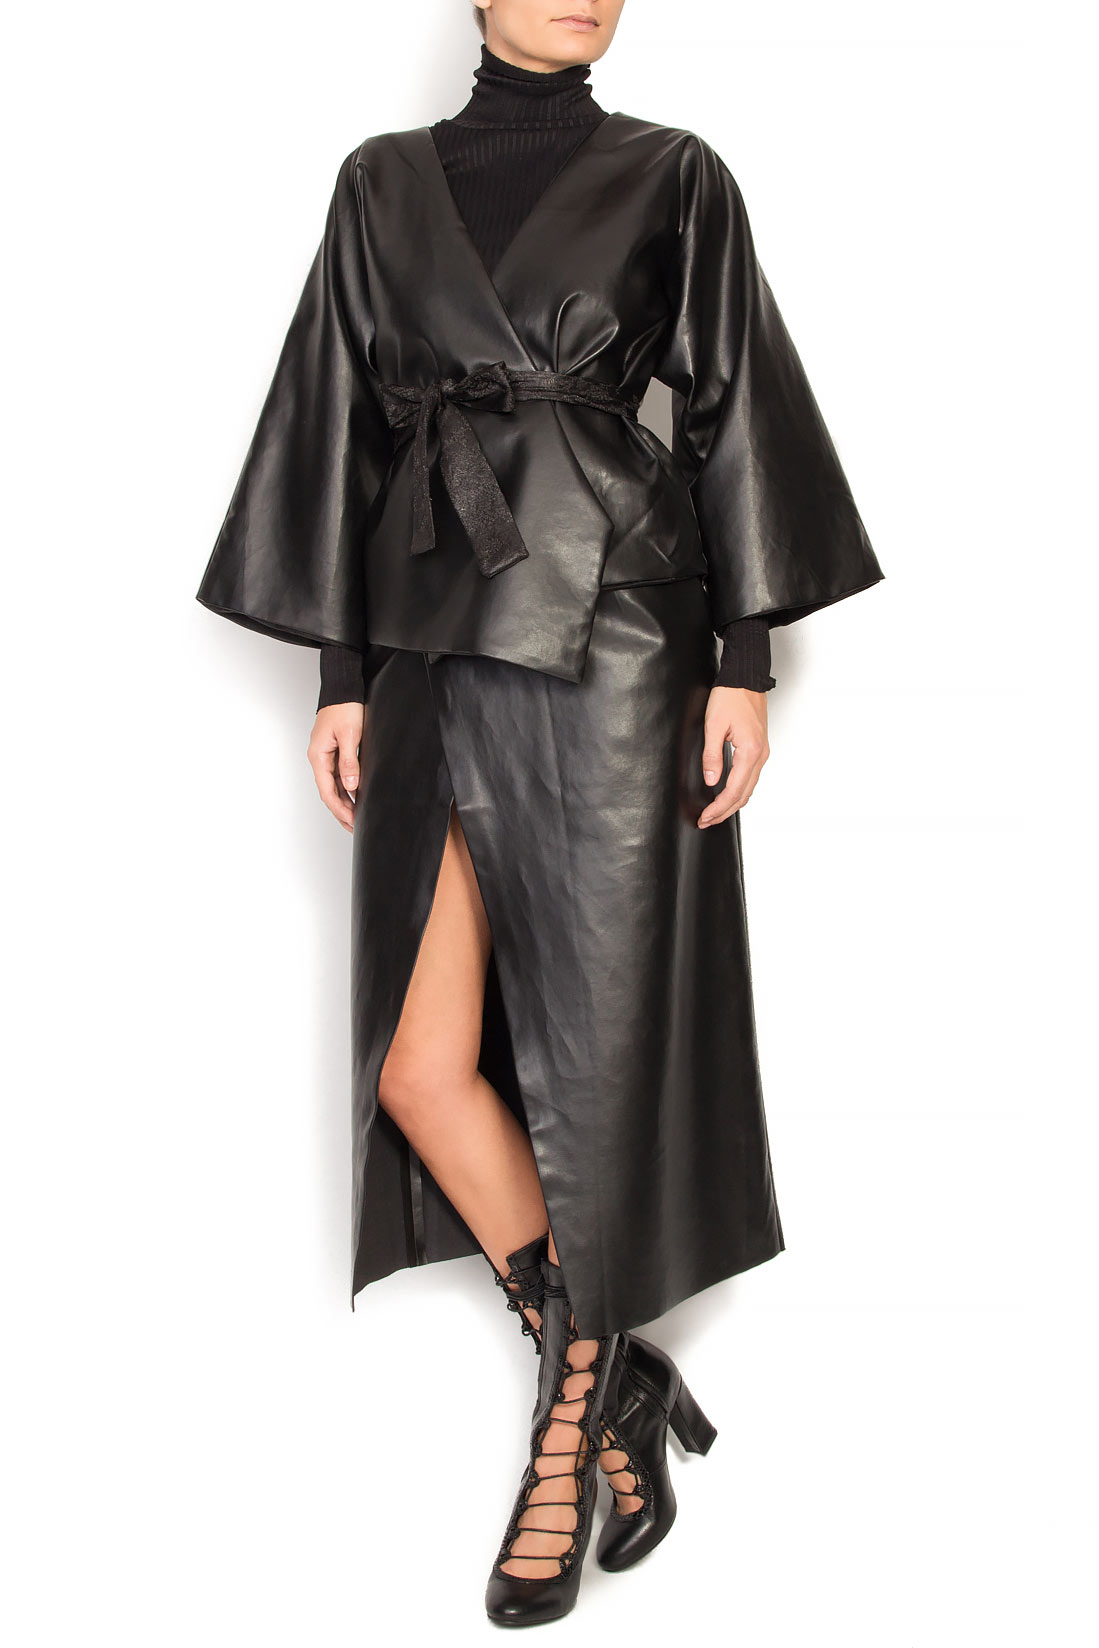 Manteau en faux cuir type kimono Simona Semen image 0